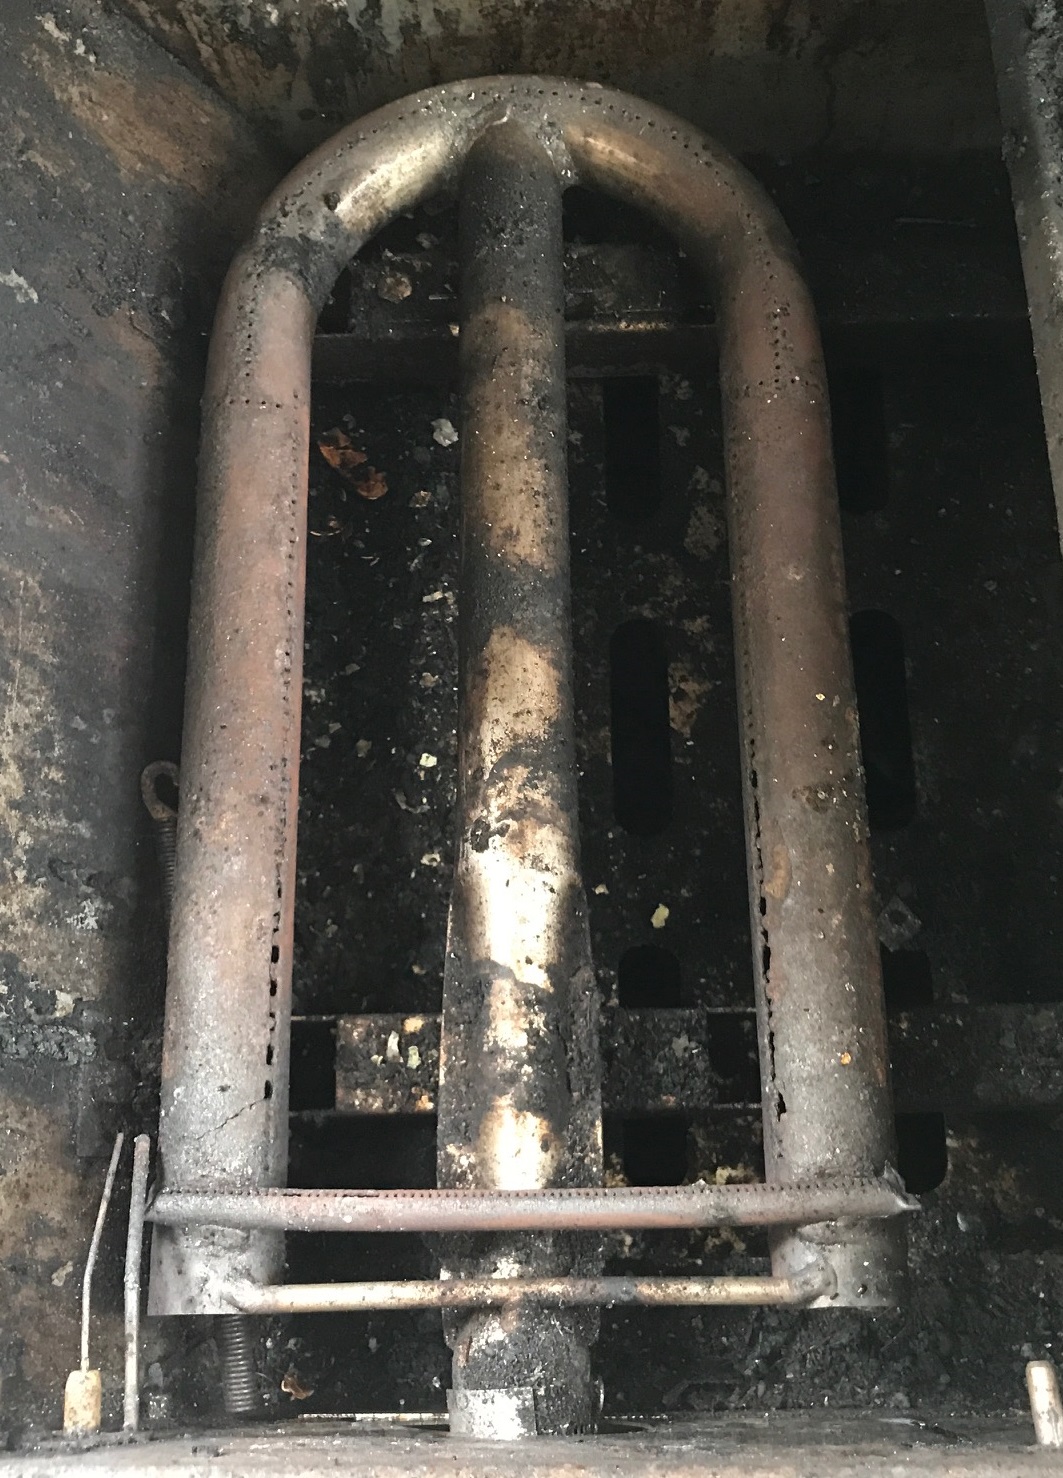 Sedona by Lynx damaged grill burner